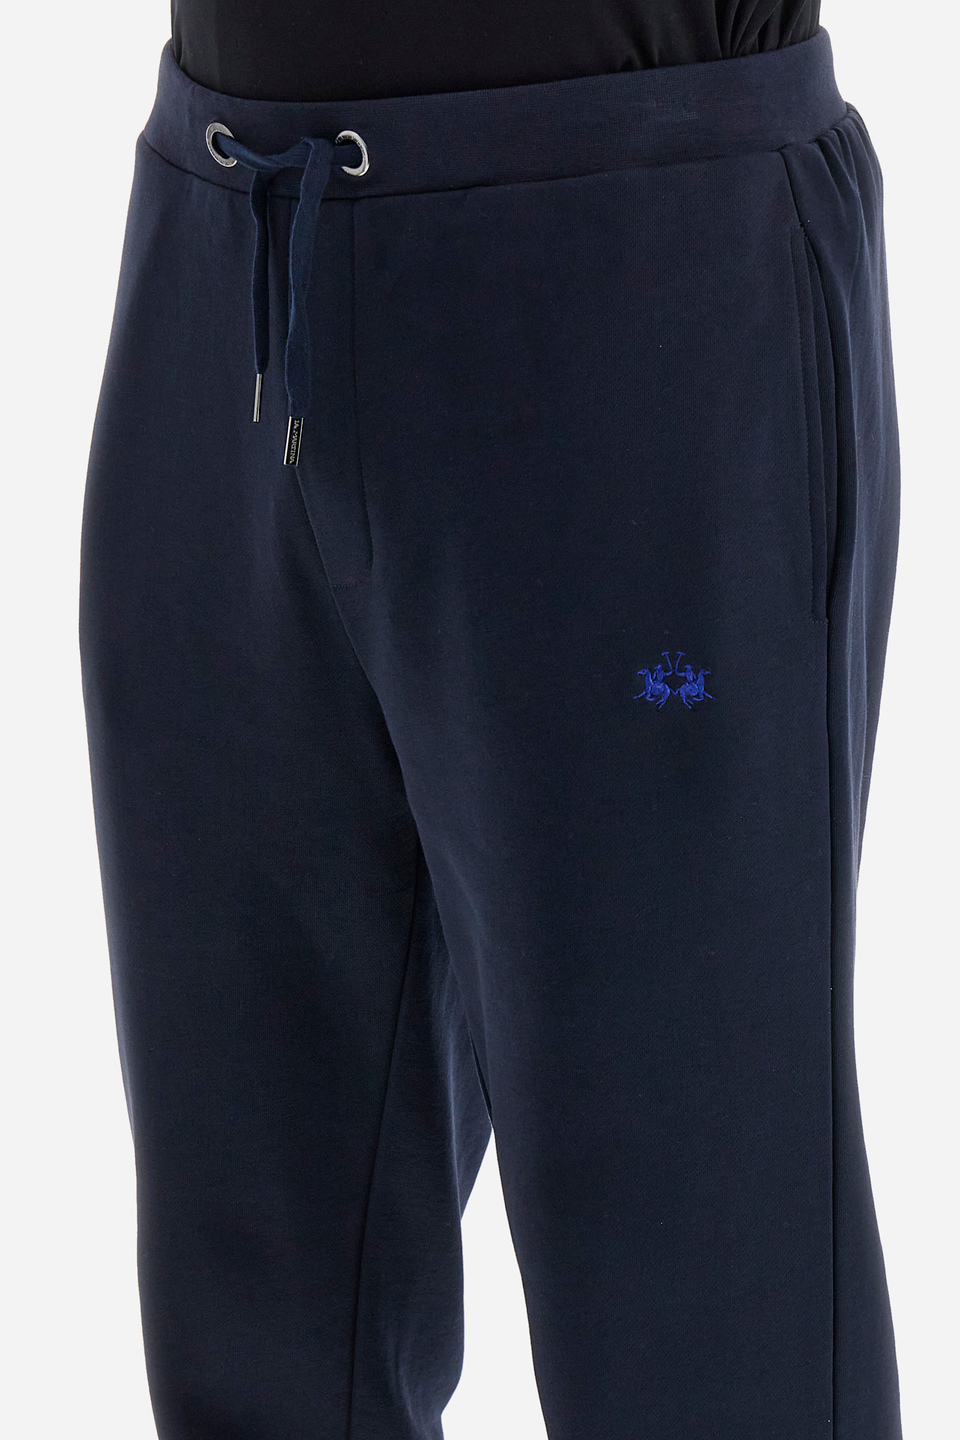 Pantalon de jogging homme en coton mélangé regular fit - Veradis